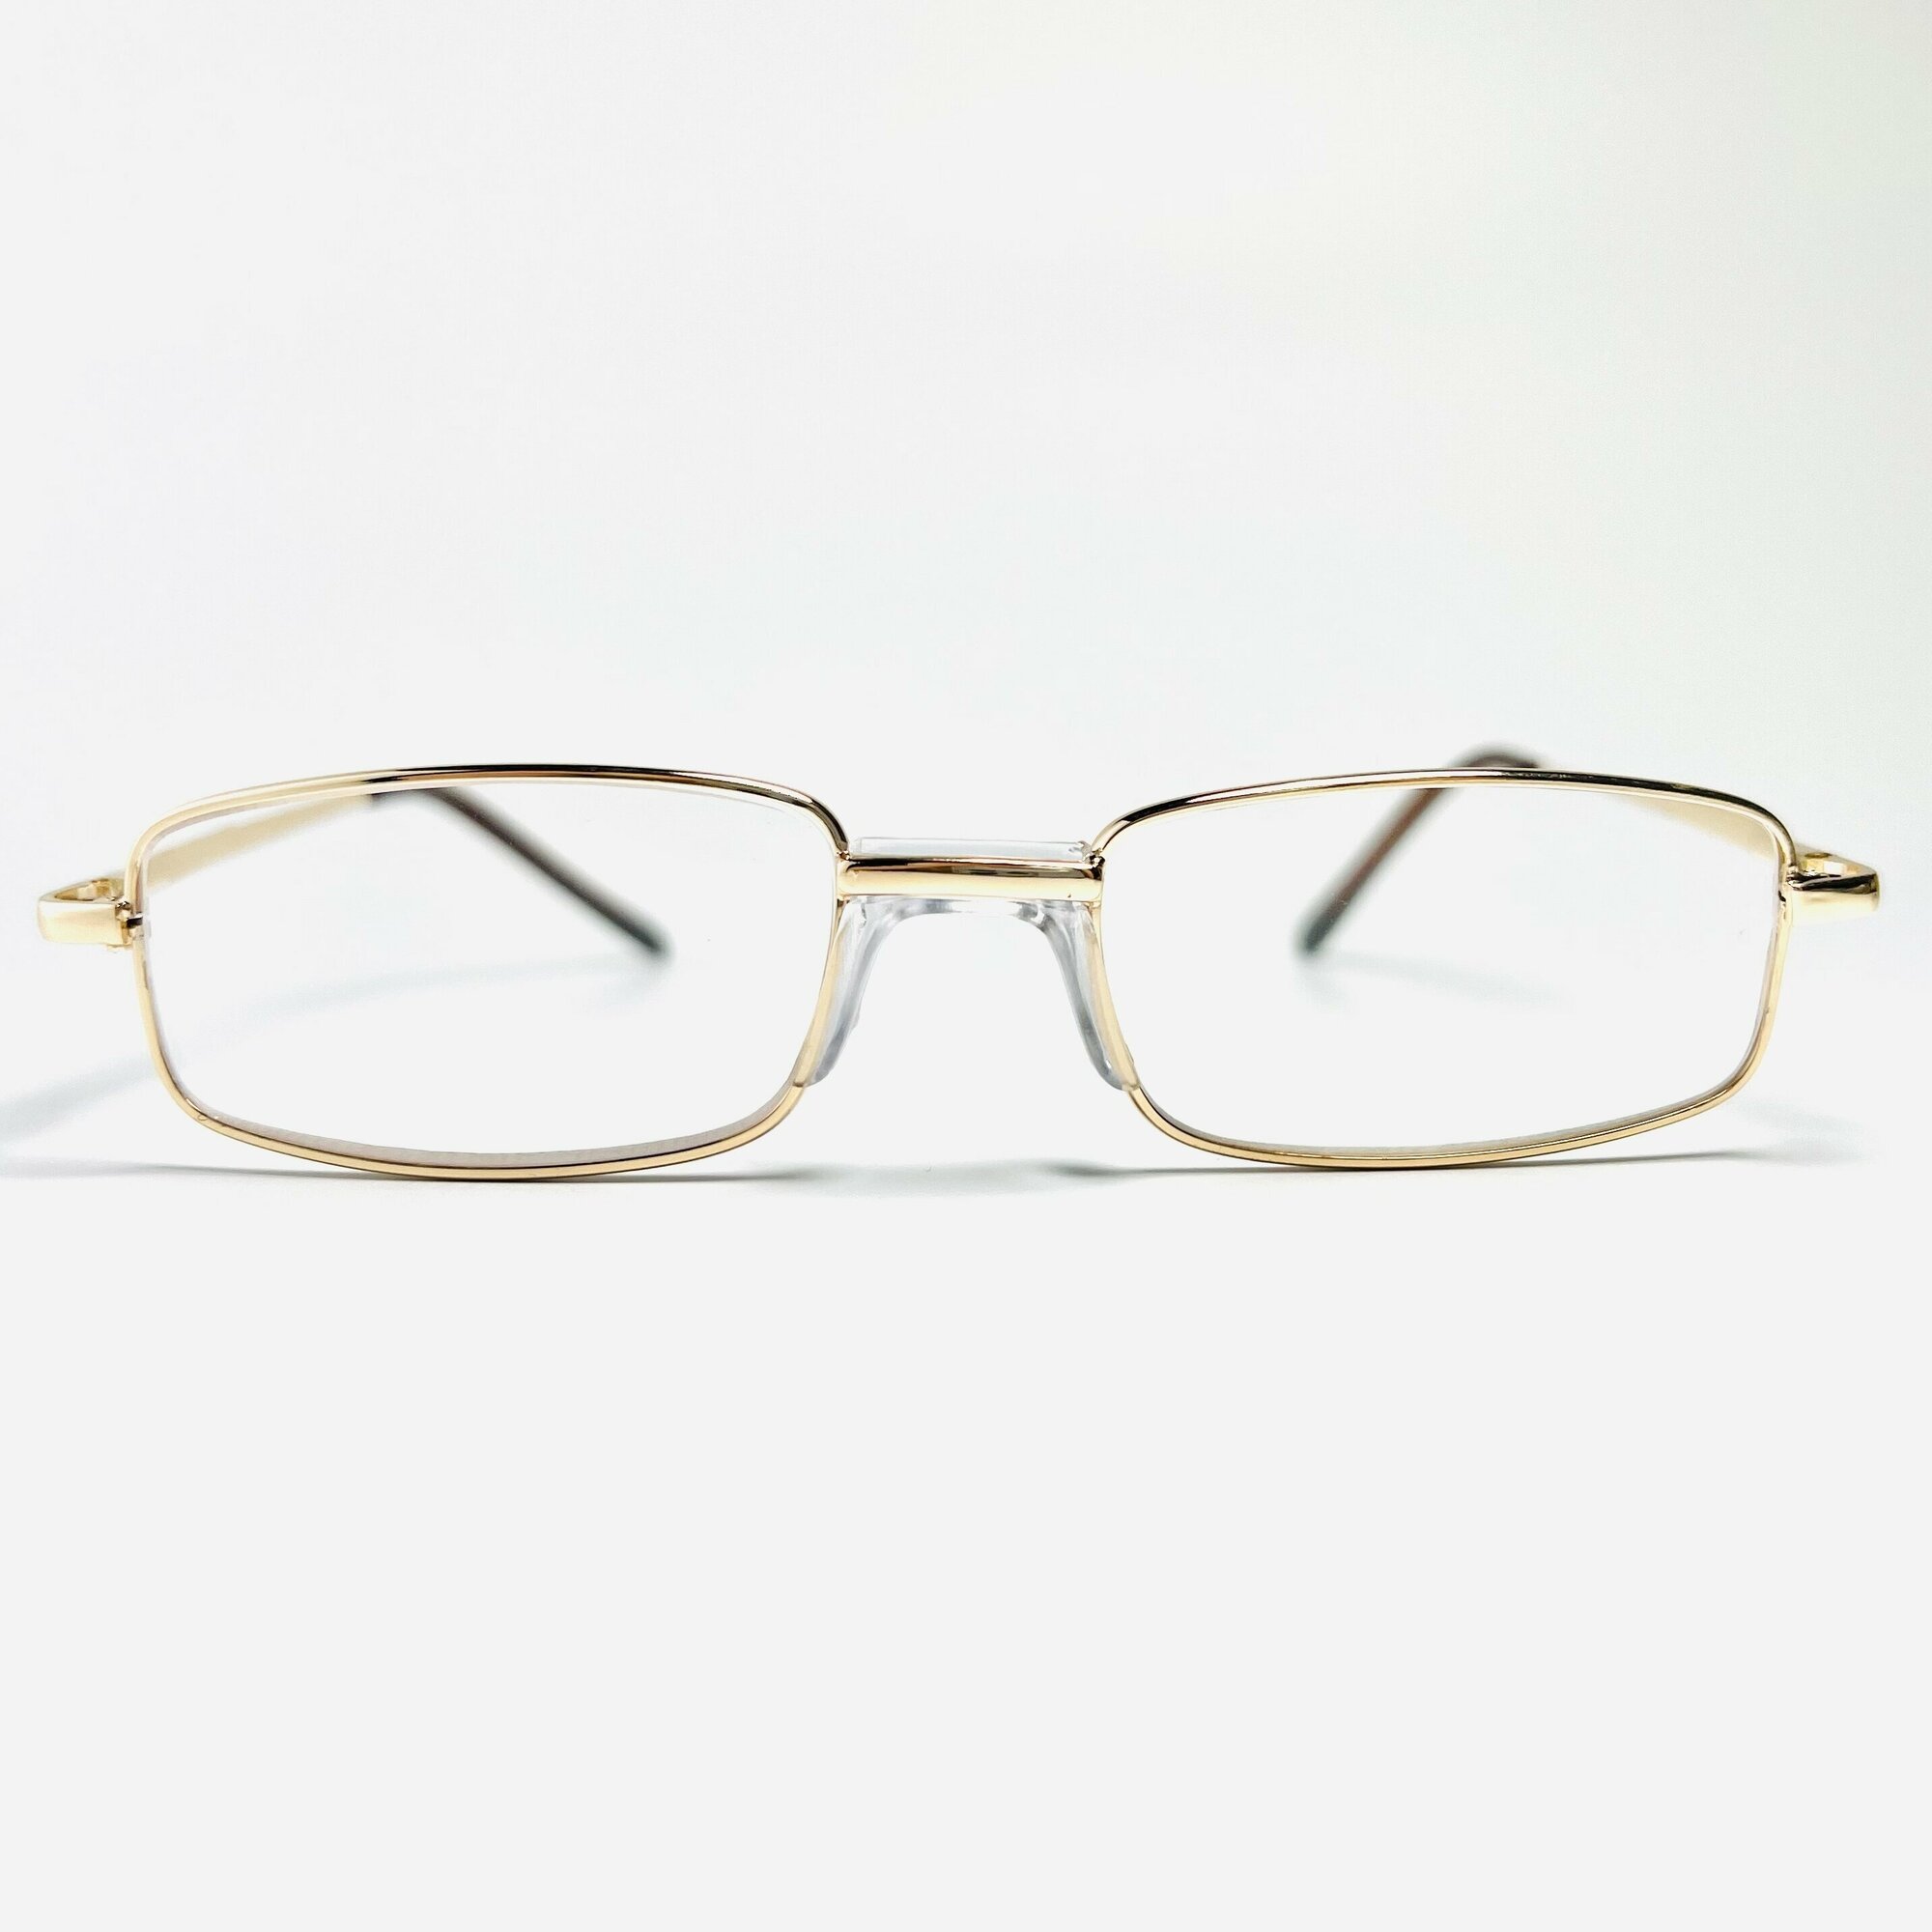 Готовые очки для зрения с диоптриями "Лектор"/ Moct 038 , +1.00 PD62-64 женские/мужские